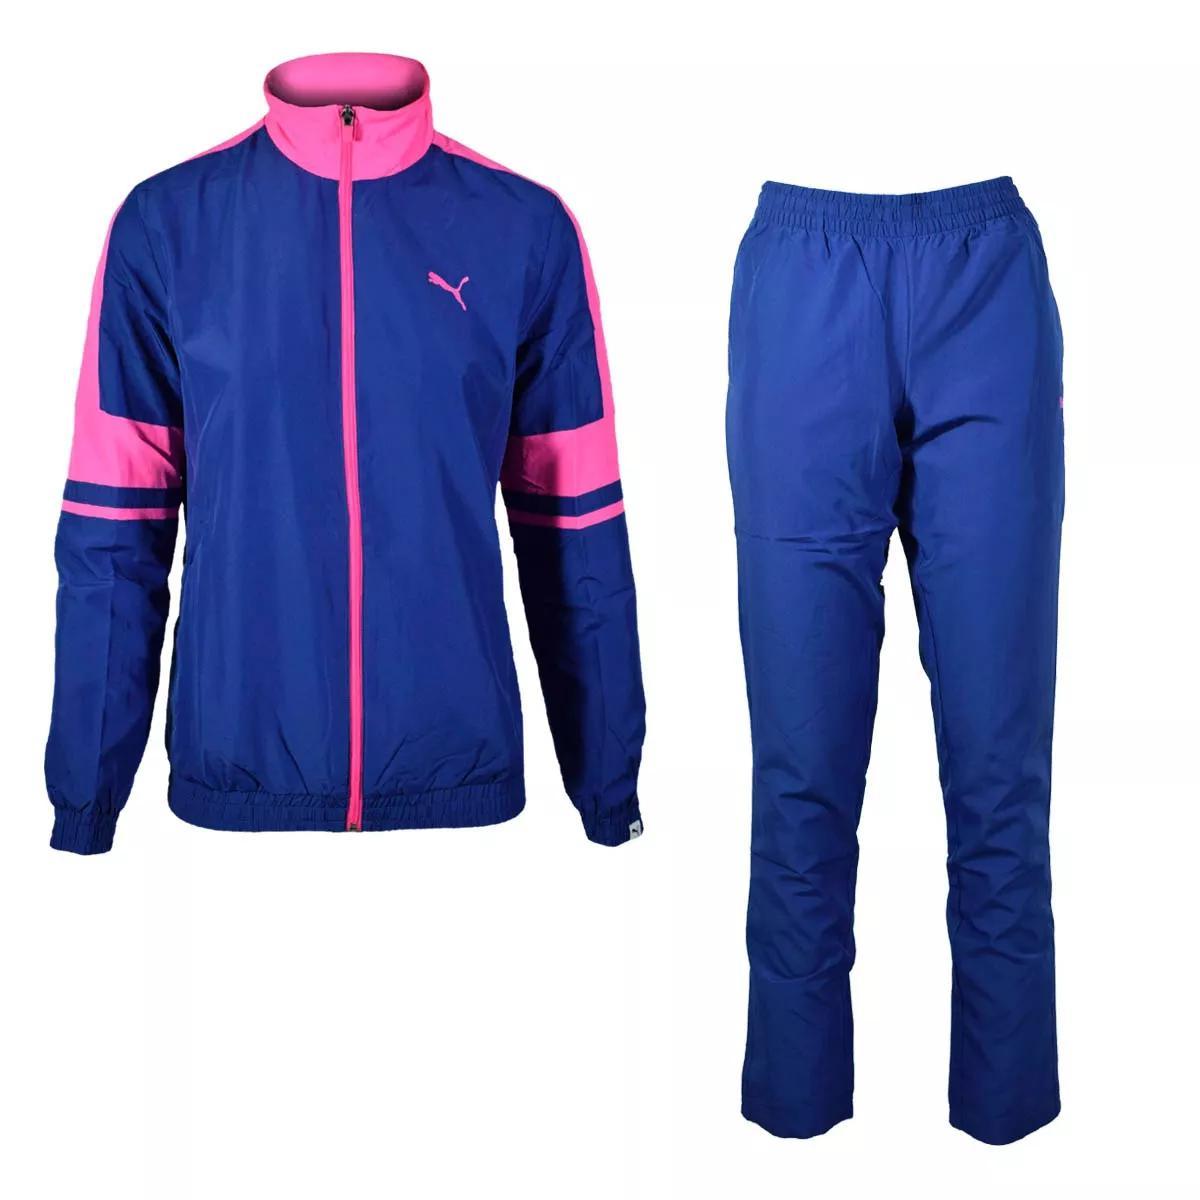  Puma Lady su-bnto Lux -tsuUS размер M голубой / розовый синий воротник-стойка жакет & брюки нейлон верх и низ в комплекте 